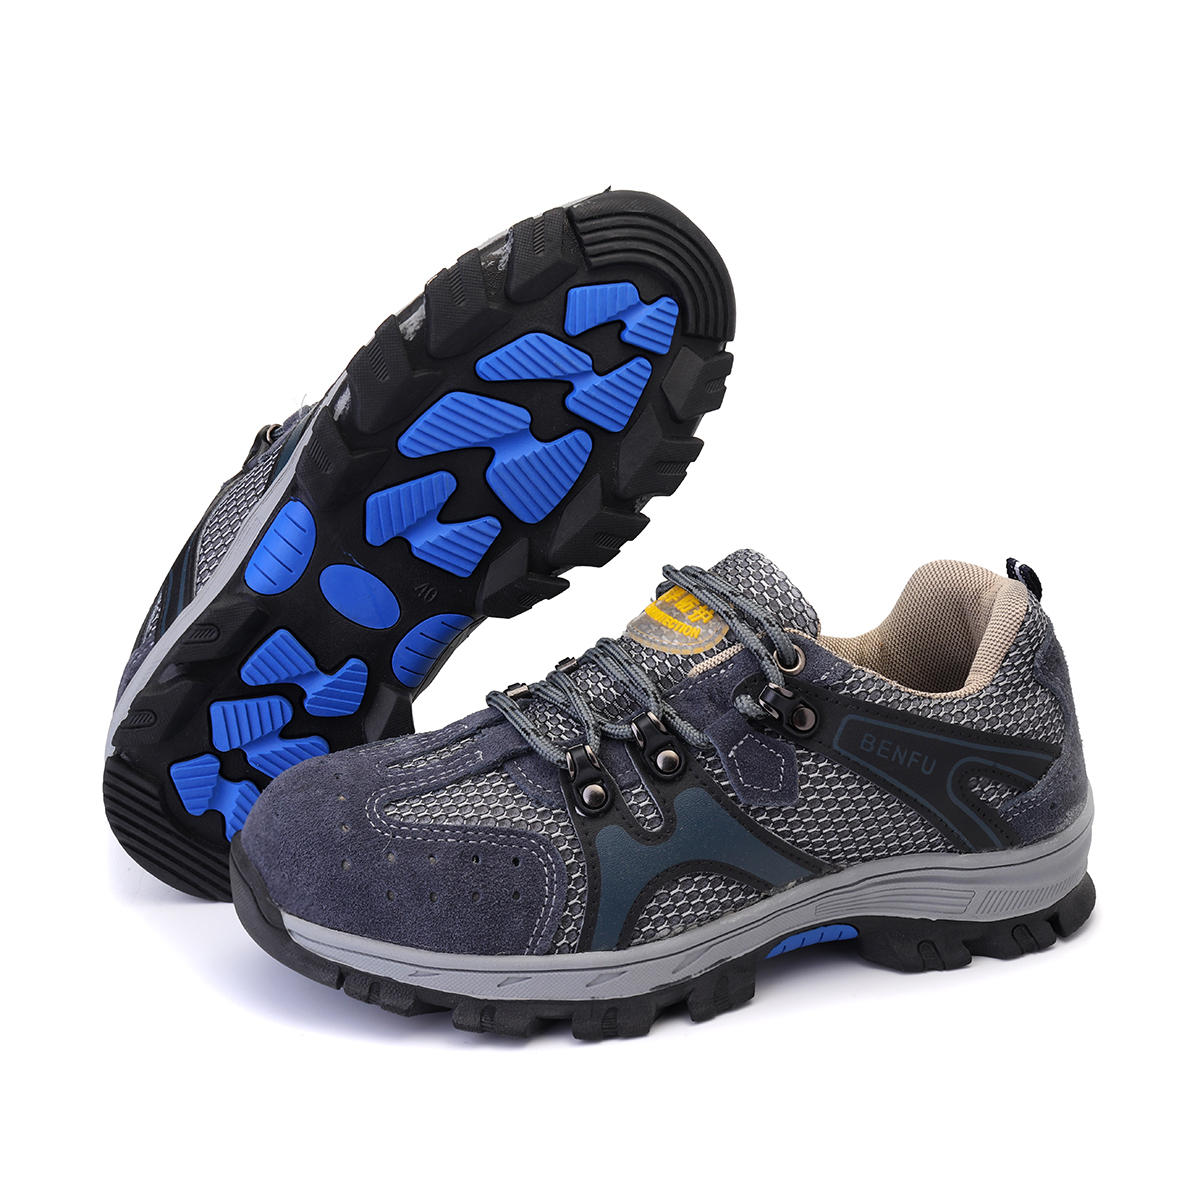 TENGOO zapatos de seguridad para hombres con puntera de acero, zapatillas antideslizantes, transpirables, aptas para senderismo, escalada y carrera.